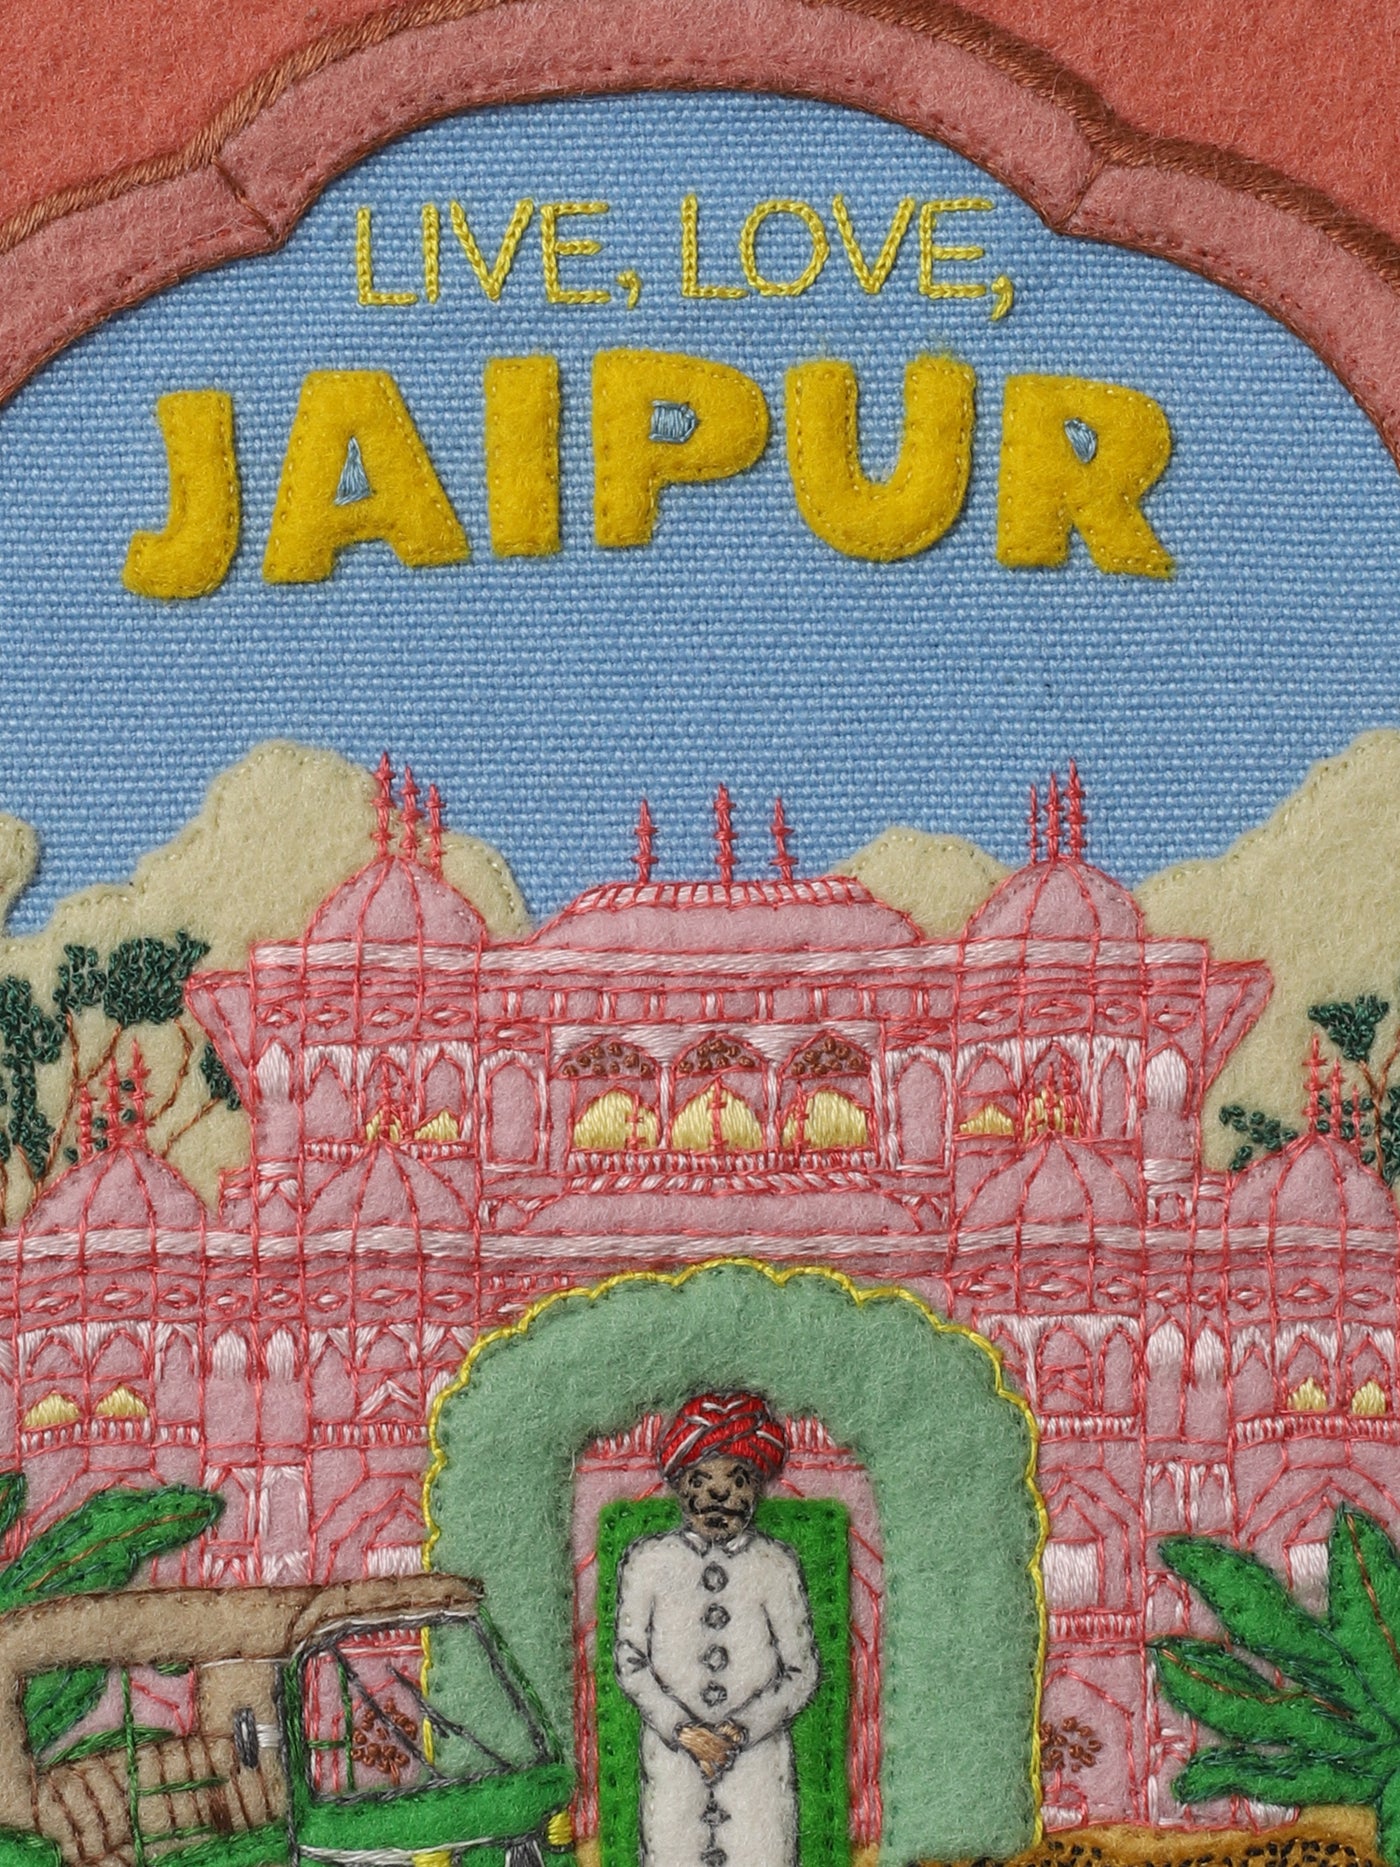 Jaipur Book Clutch